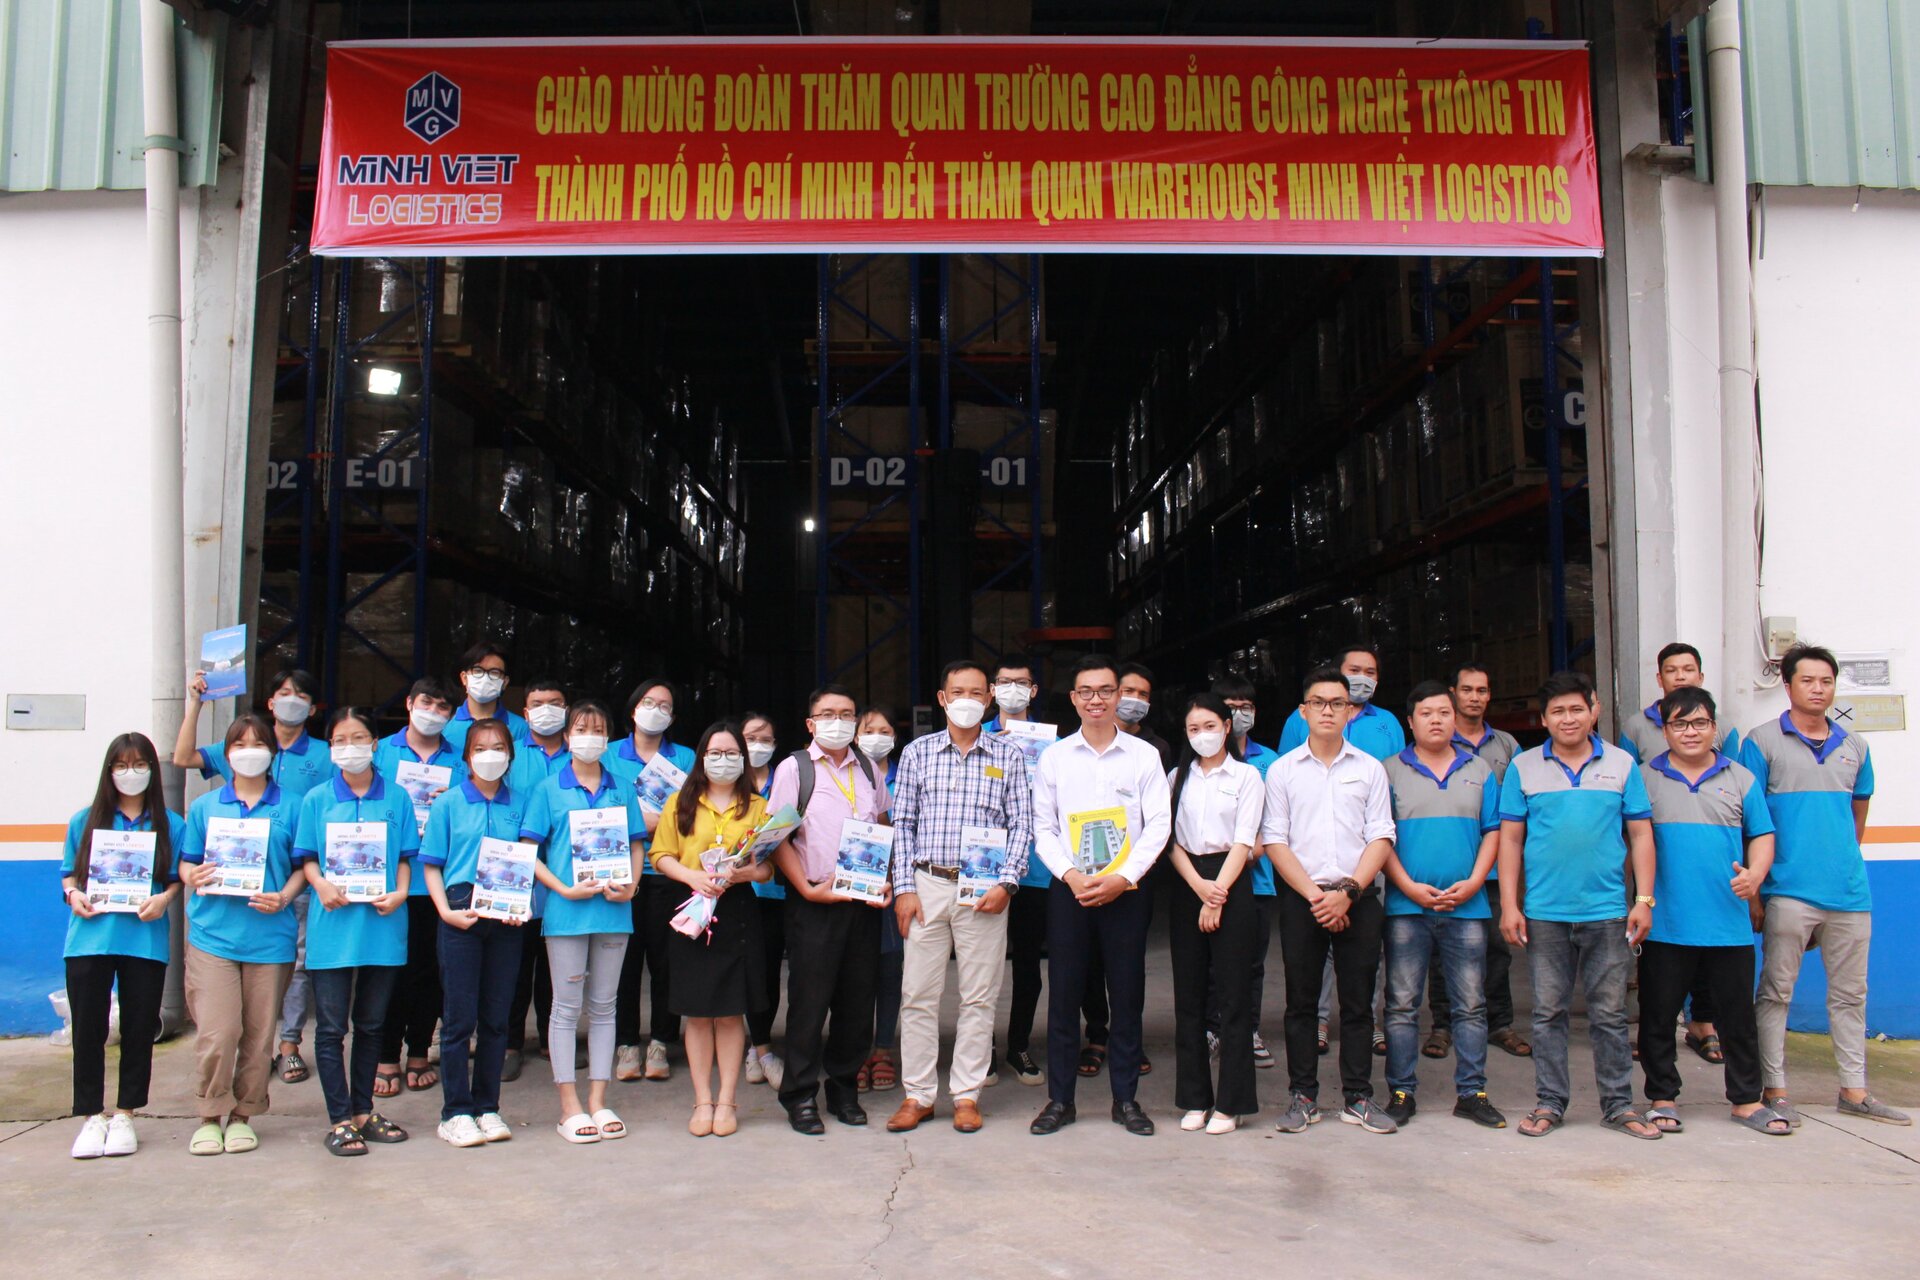 Chuyến tham quan Công ty Minh Việt Logistics của sinh viên ITC